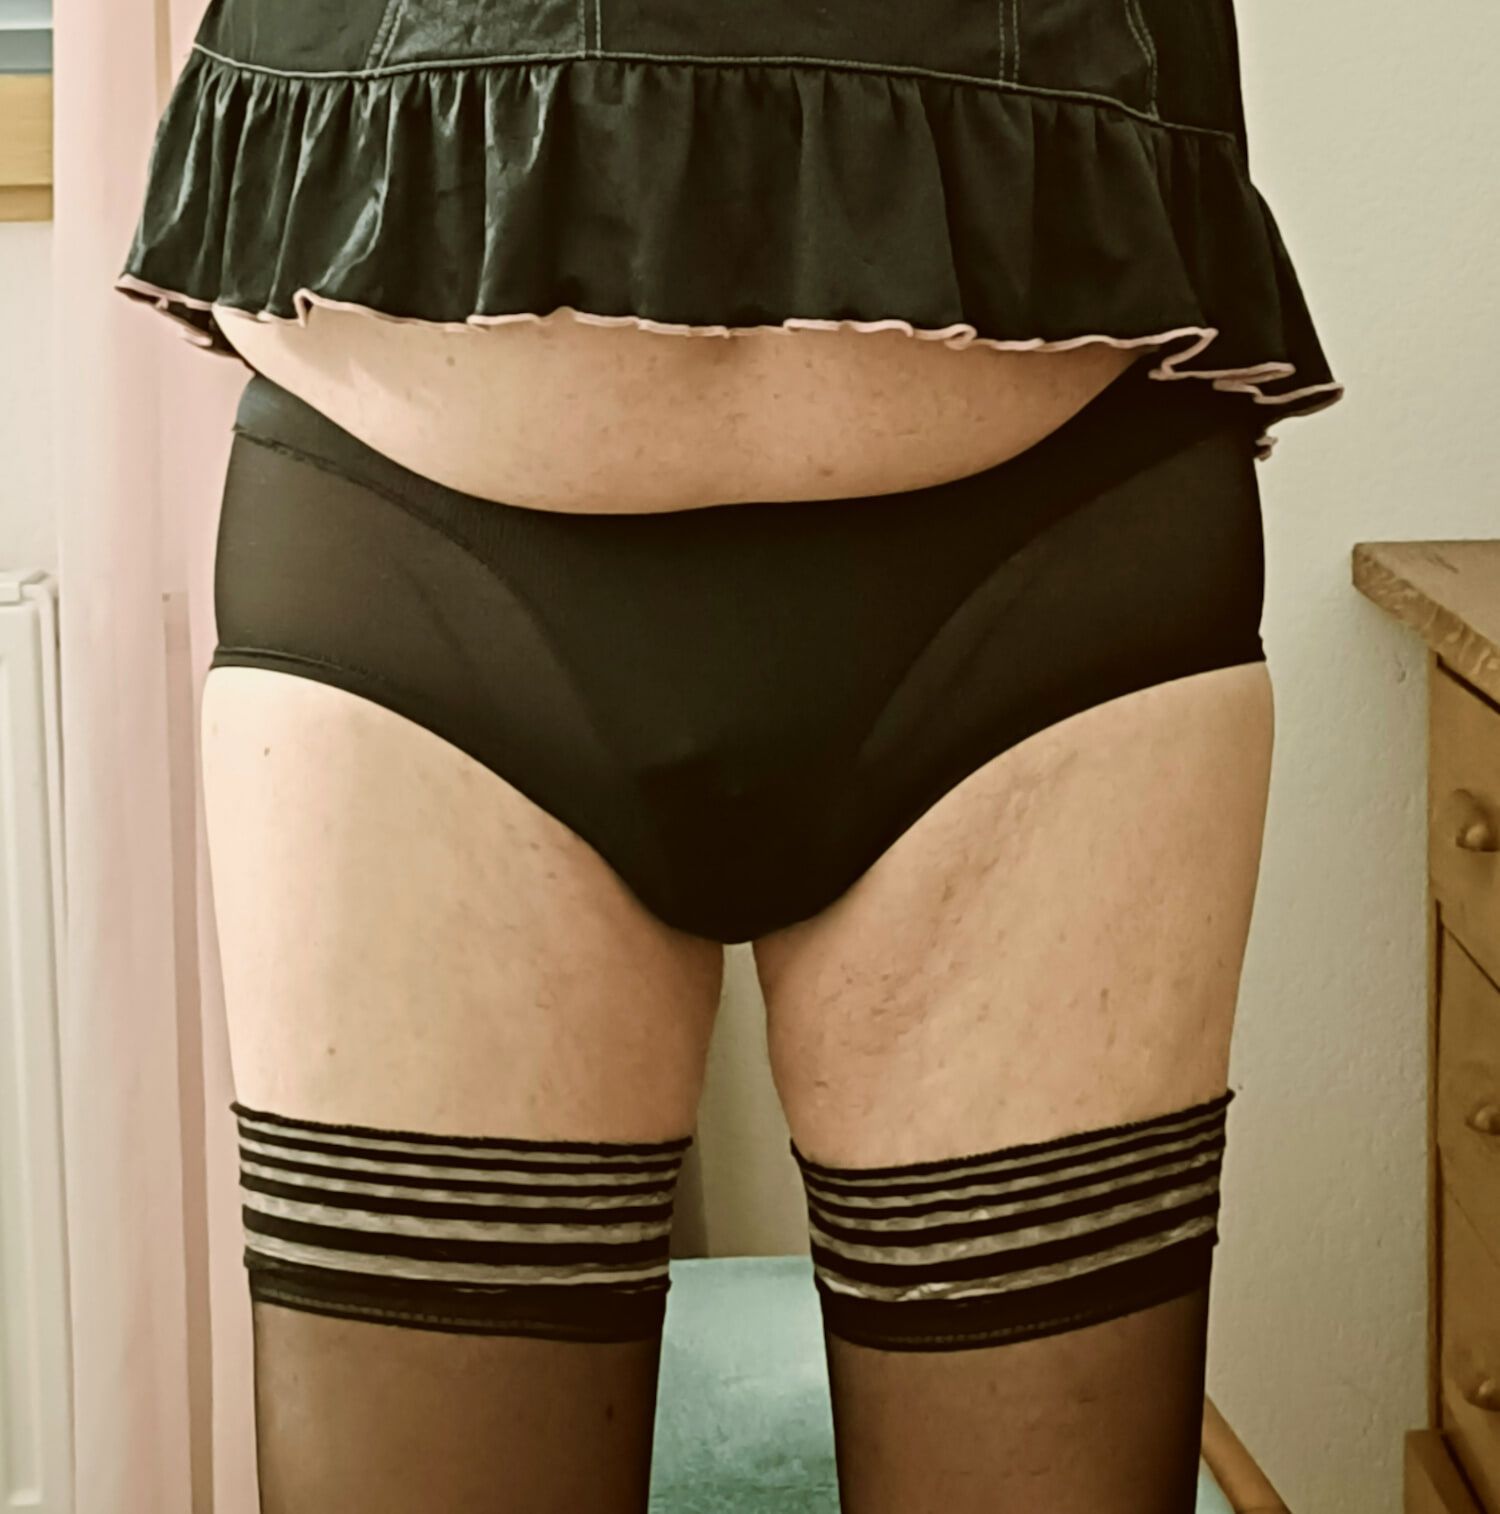 My wife's black panties